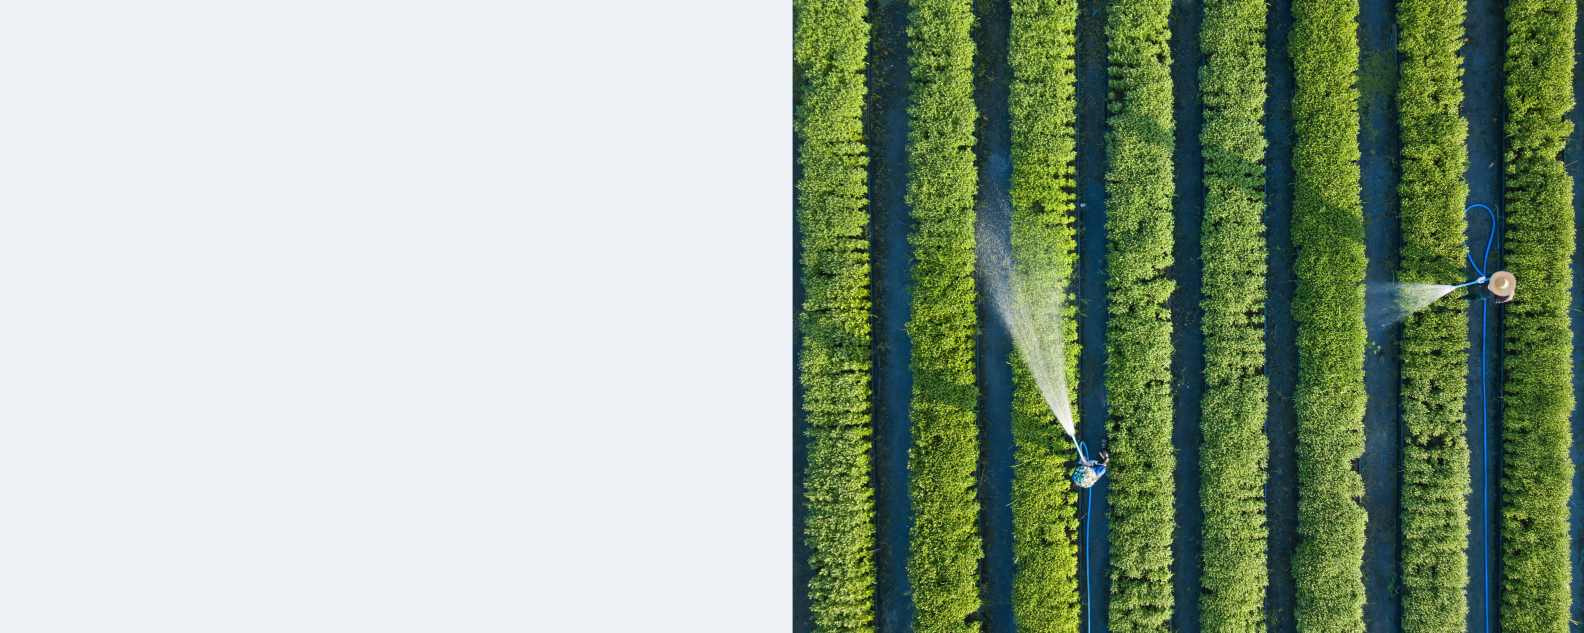 Vista aérea superior de los agricultores regando vegetales usando una manguera en el jardín que plantó en fila